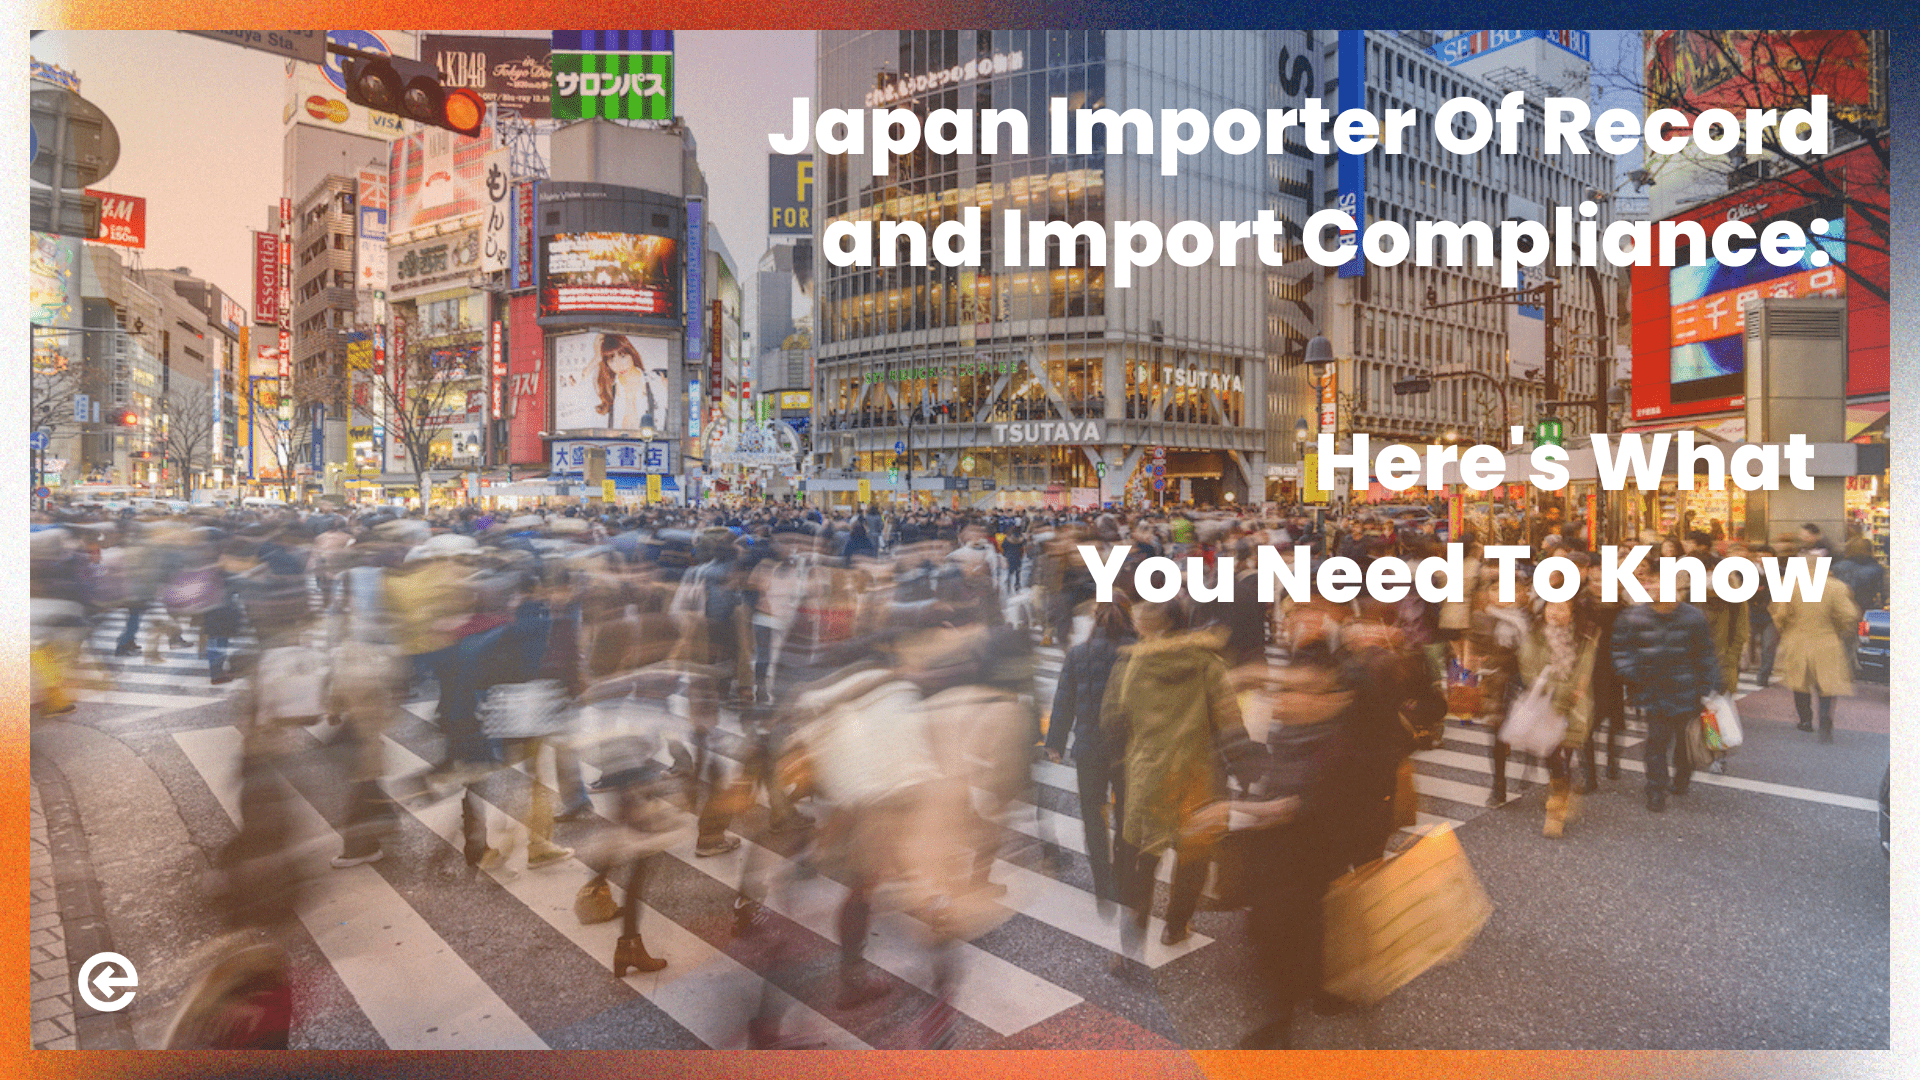 日本の記録輸入業者と輸入コンプライアンス：知っておくべきことはこれだ